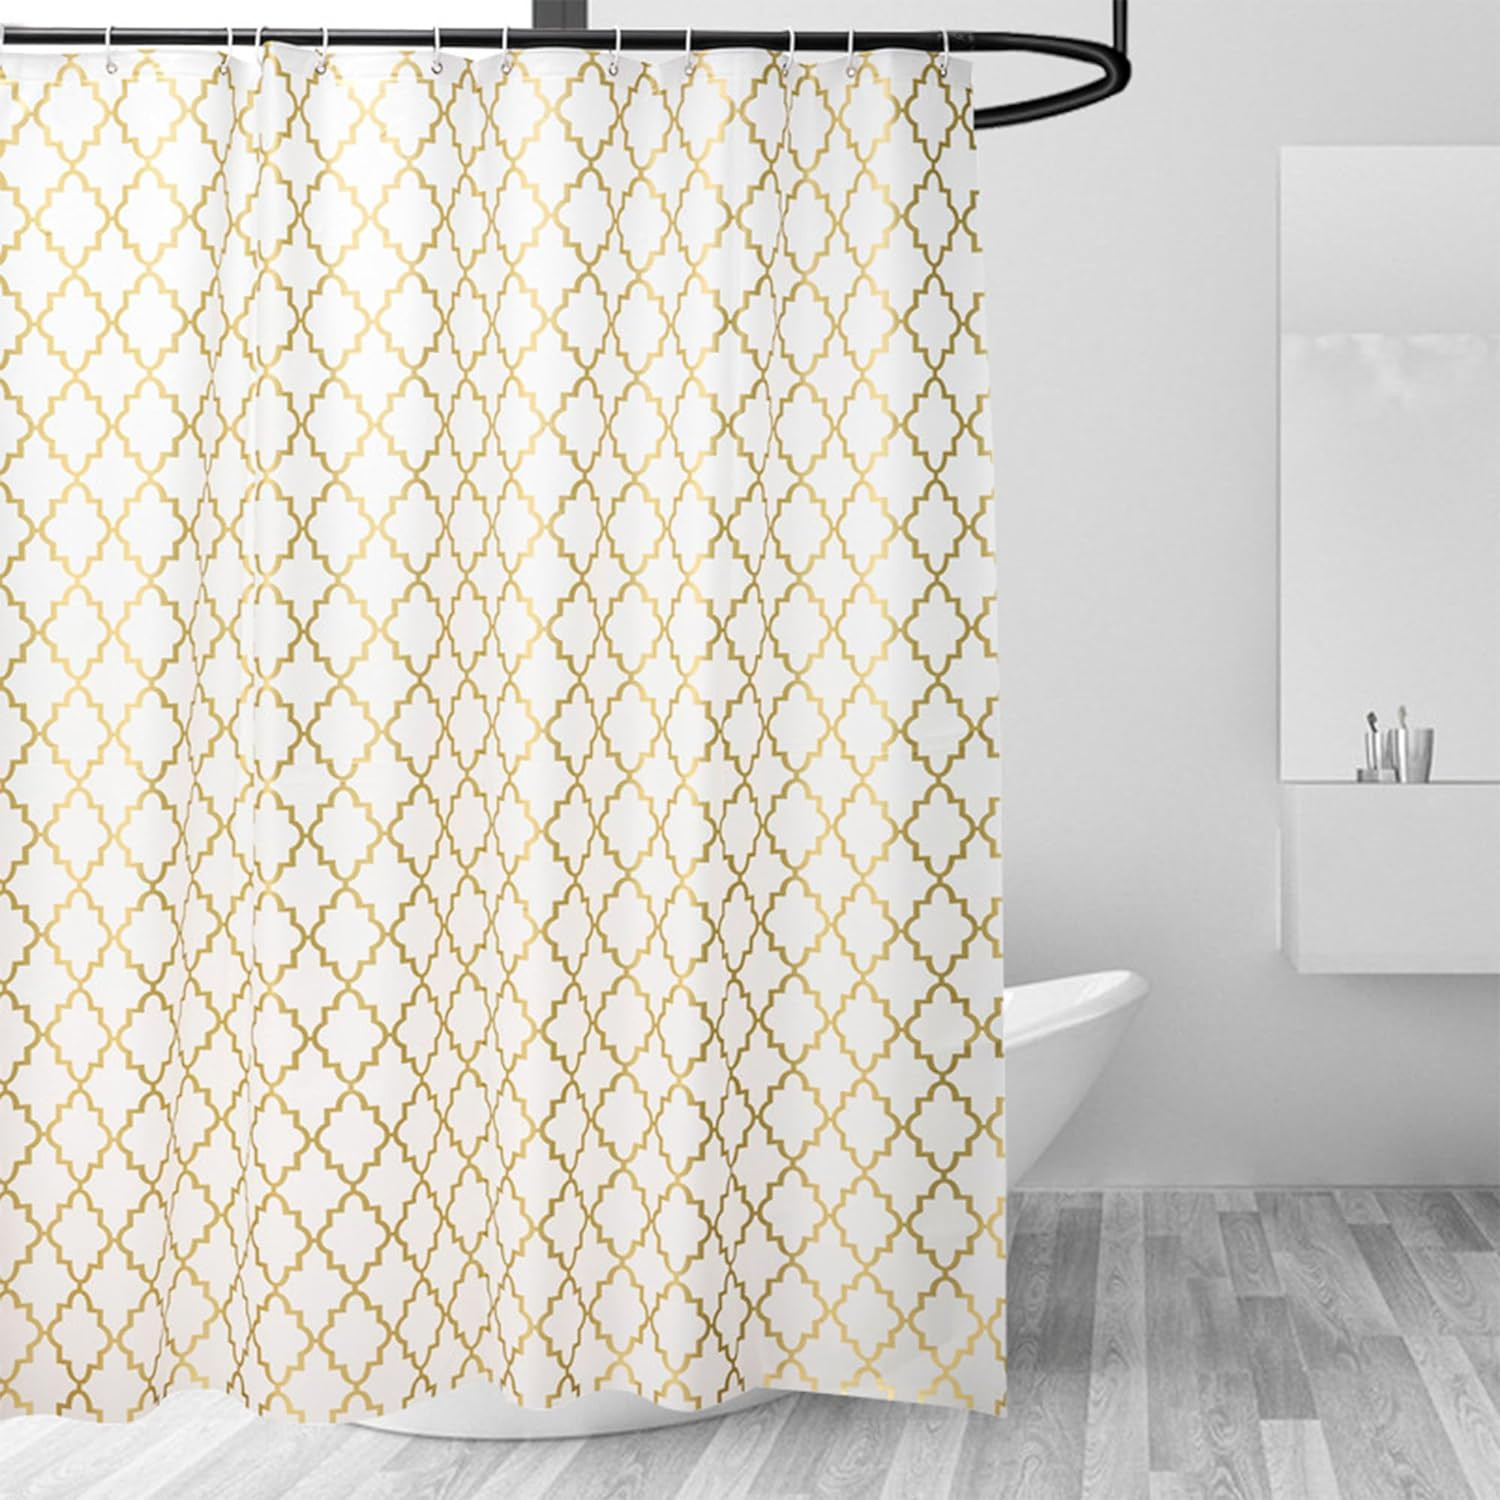 Kuber IndustriesSoft Texture Bath curtain|Natural Drape Waterproof Shower Curtain 6 Feet|Gold